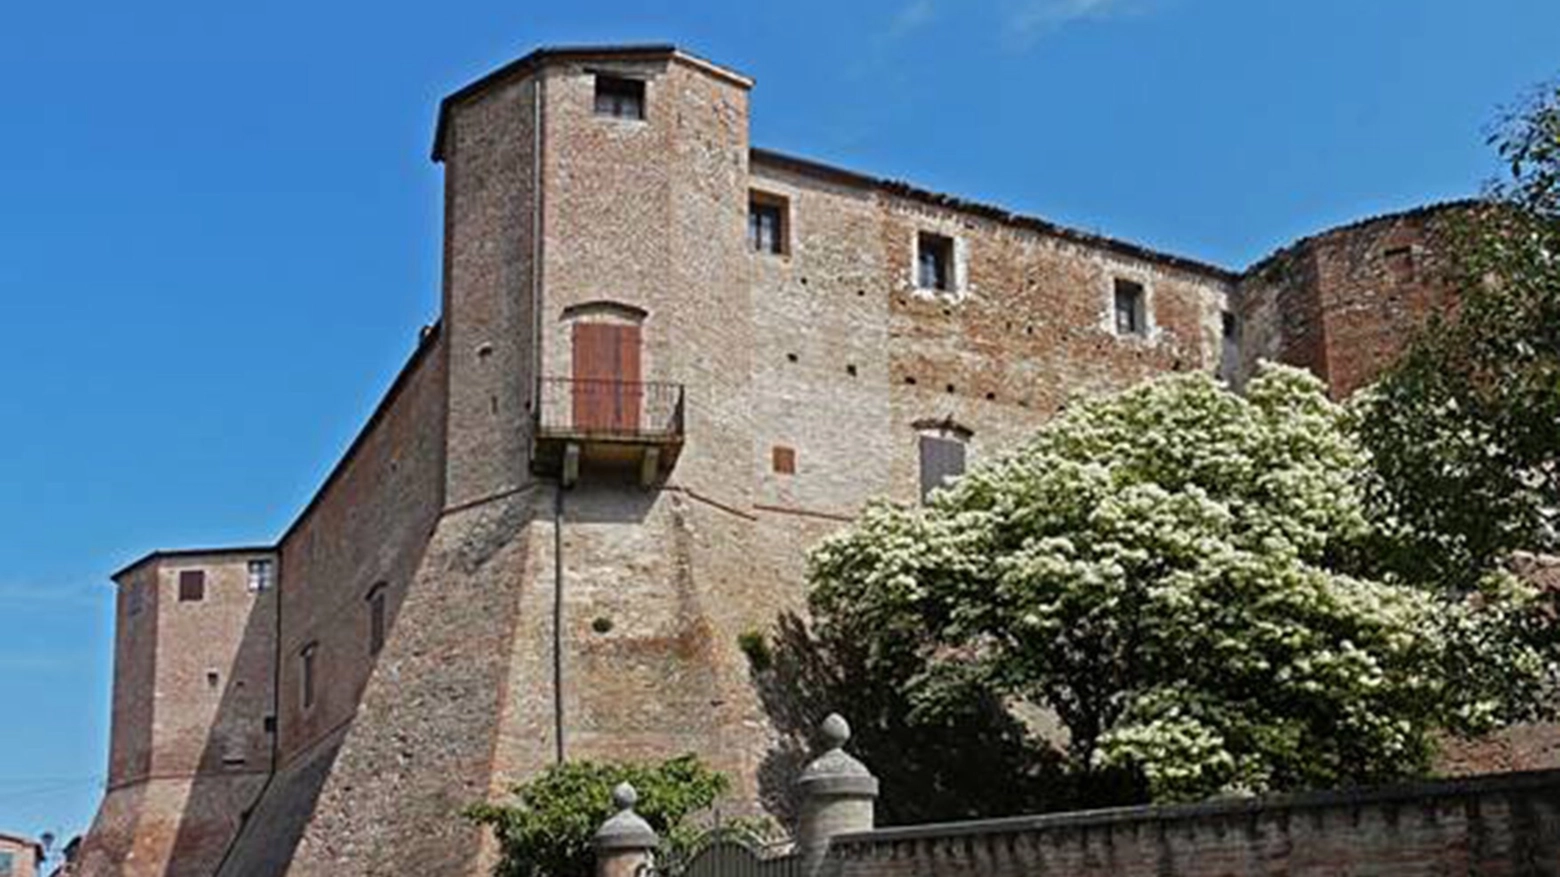 Santarcangelo di Romagna, Rocca Malatestiana